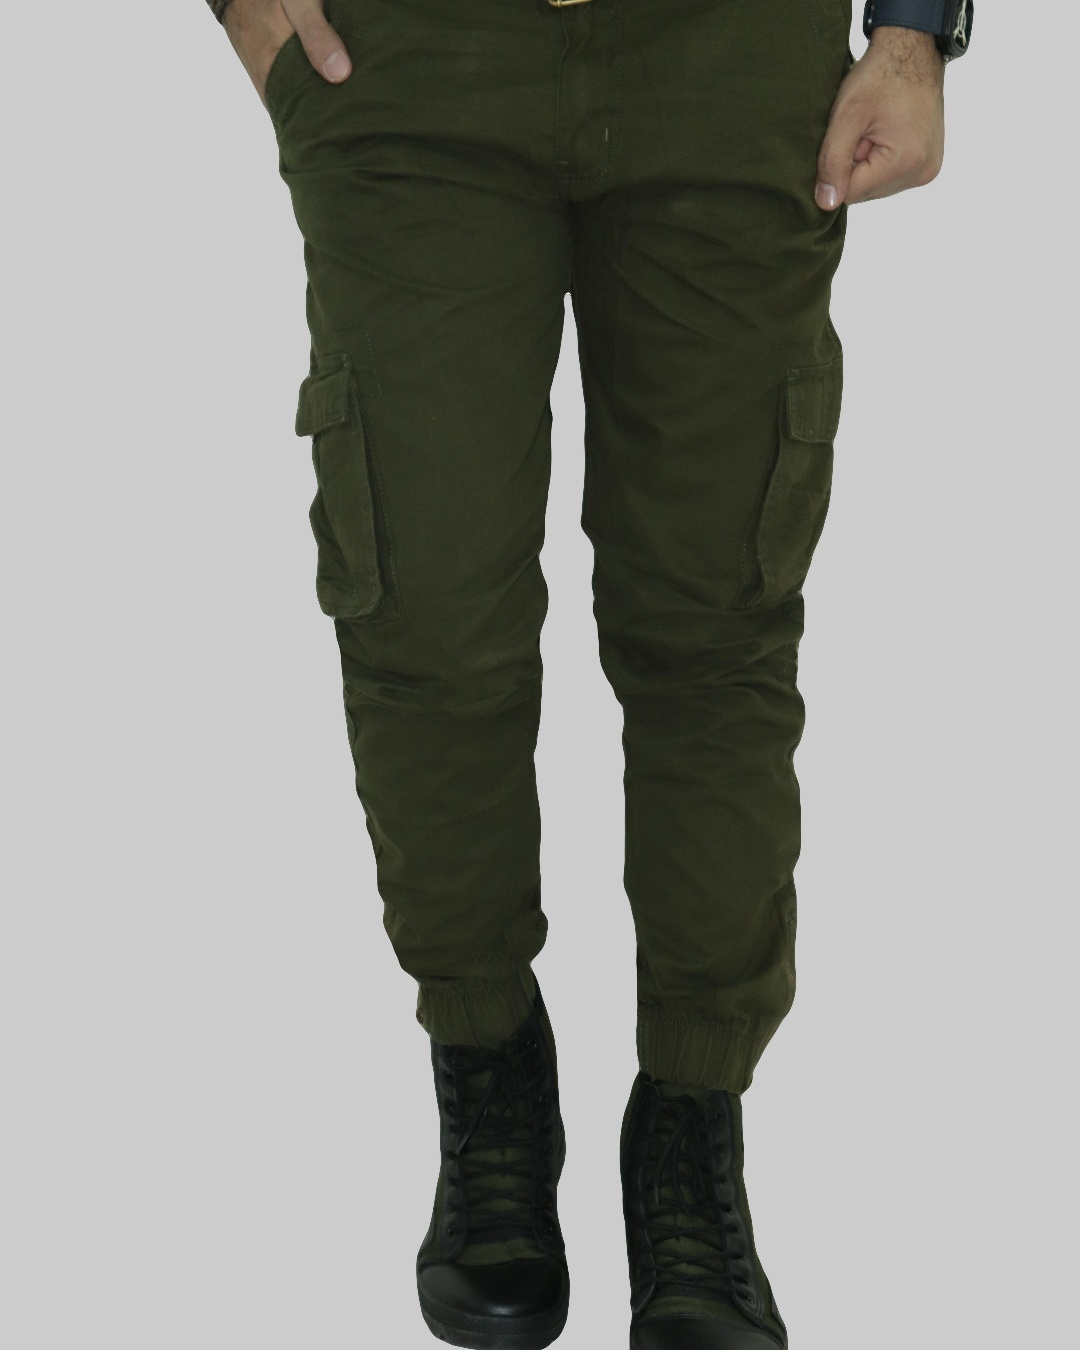 Buy Men's Green Cargo Pants Online at Bewakoof